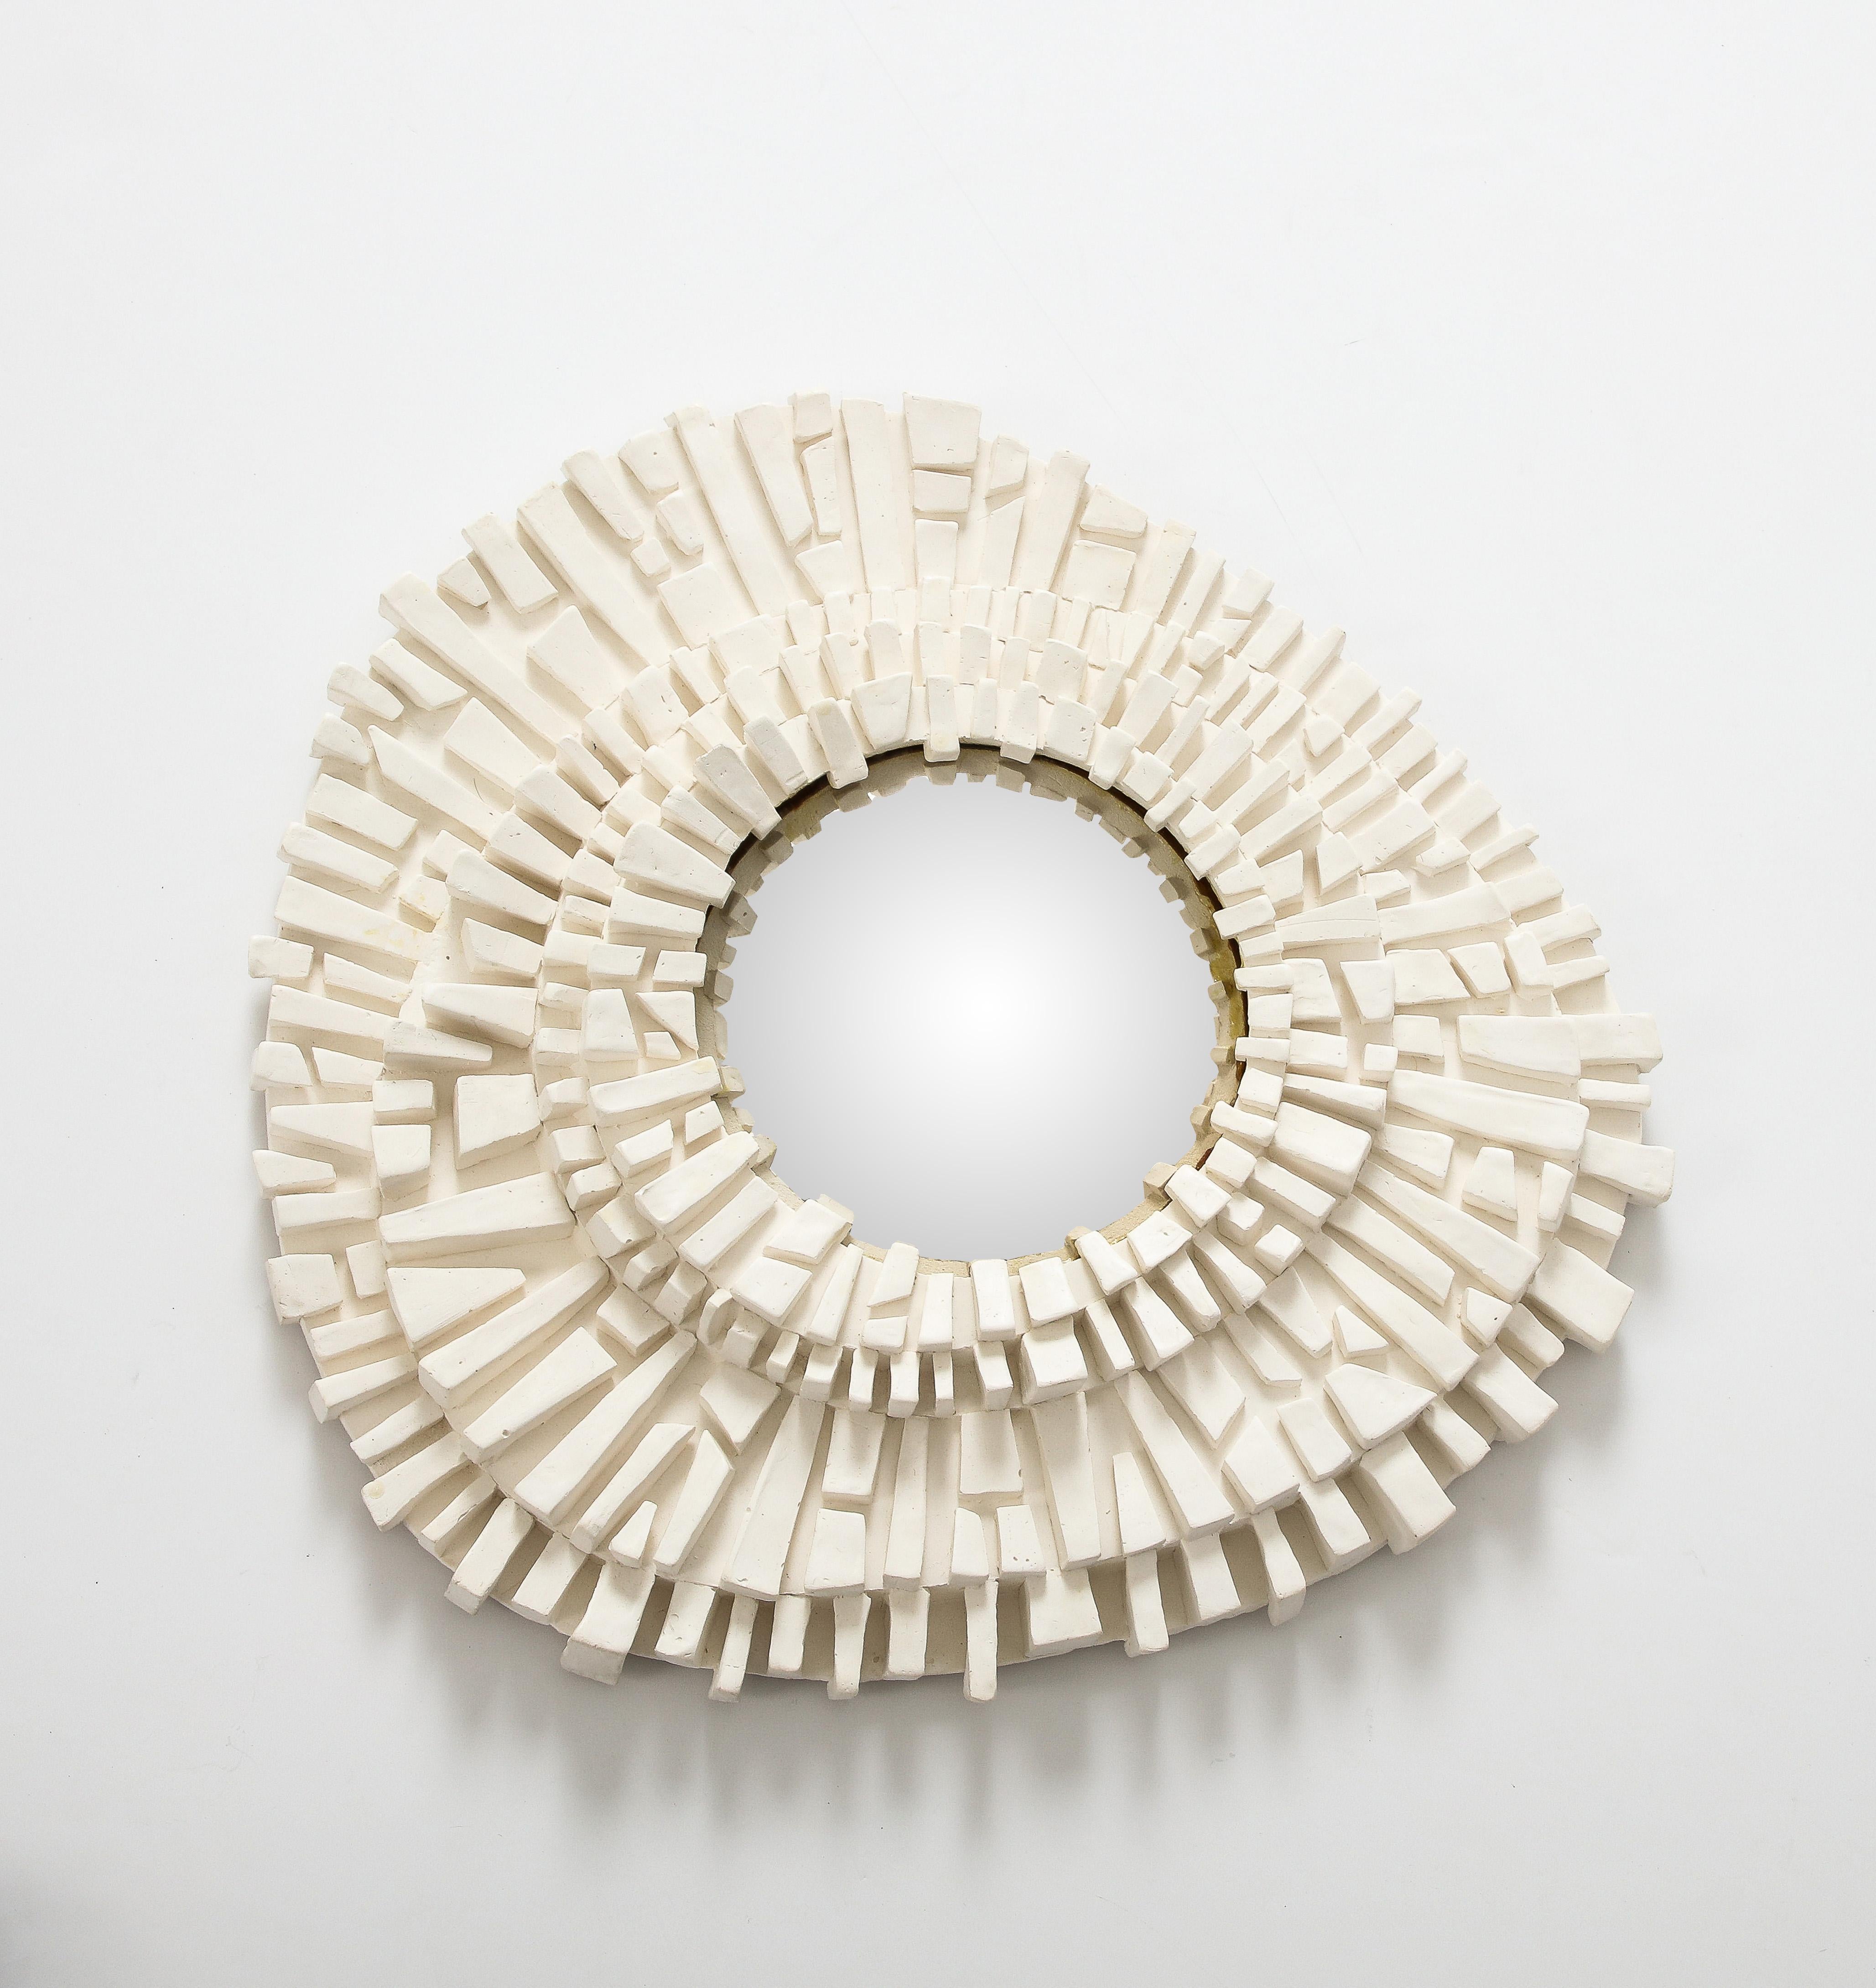 Faisant partie d'une série dans notre inventaire, ce miroir en plâtre sculpté avec verre convexe est stupéfiant seul ou dans le cadre d'une collection  Sa forme asymétrique et sa texture intéressante en font une pièce unique, adaptée à un cadre